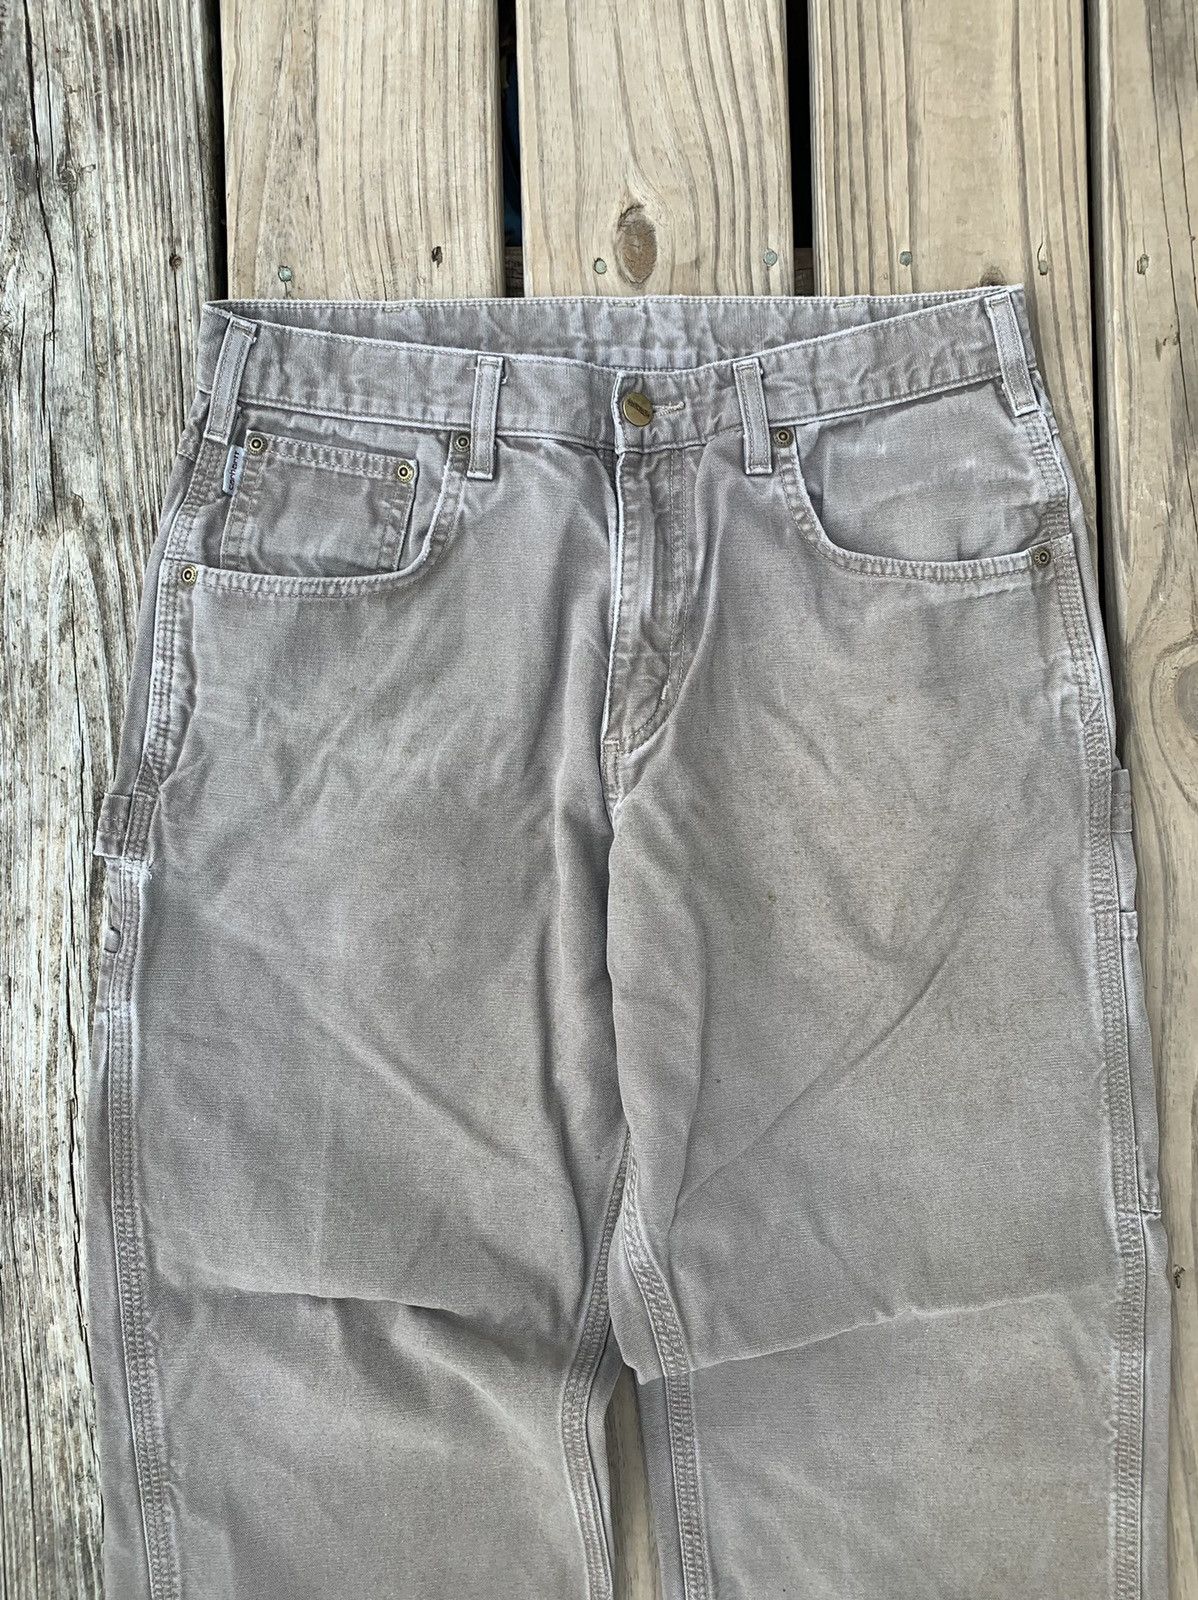 Vintage Vintage Carhartt Carpenter Pants Size US 32 / EU 48 - 2 Preview